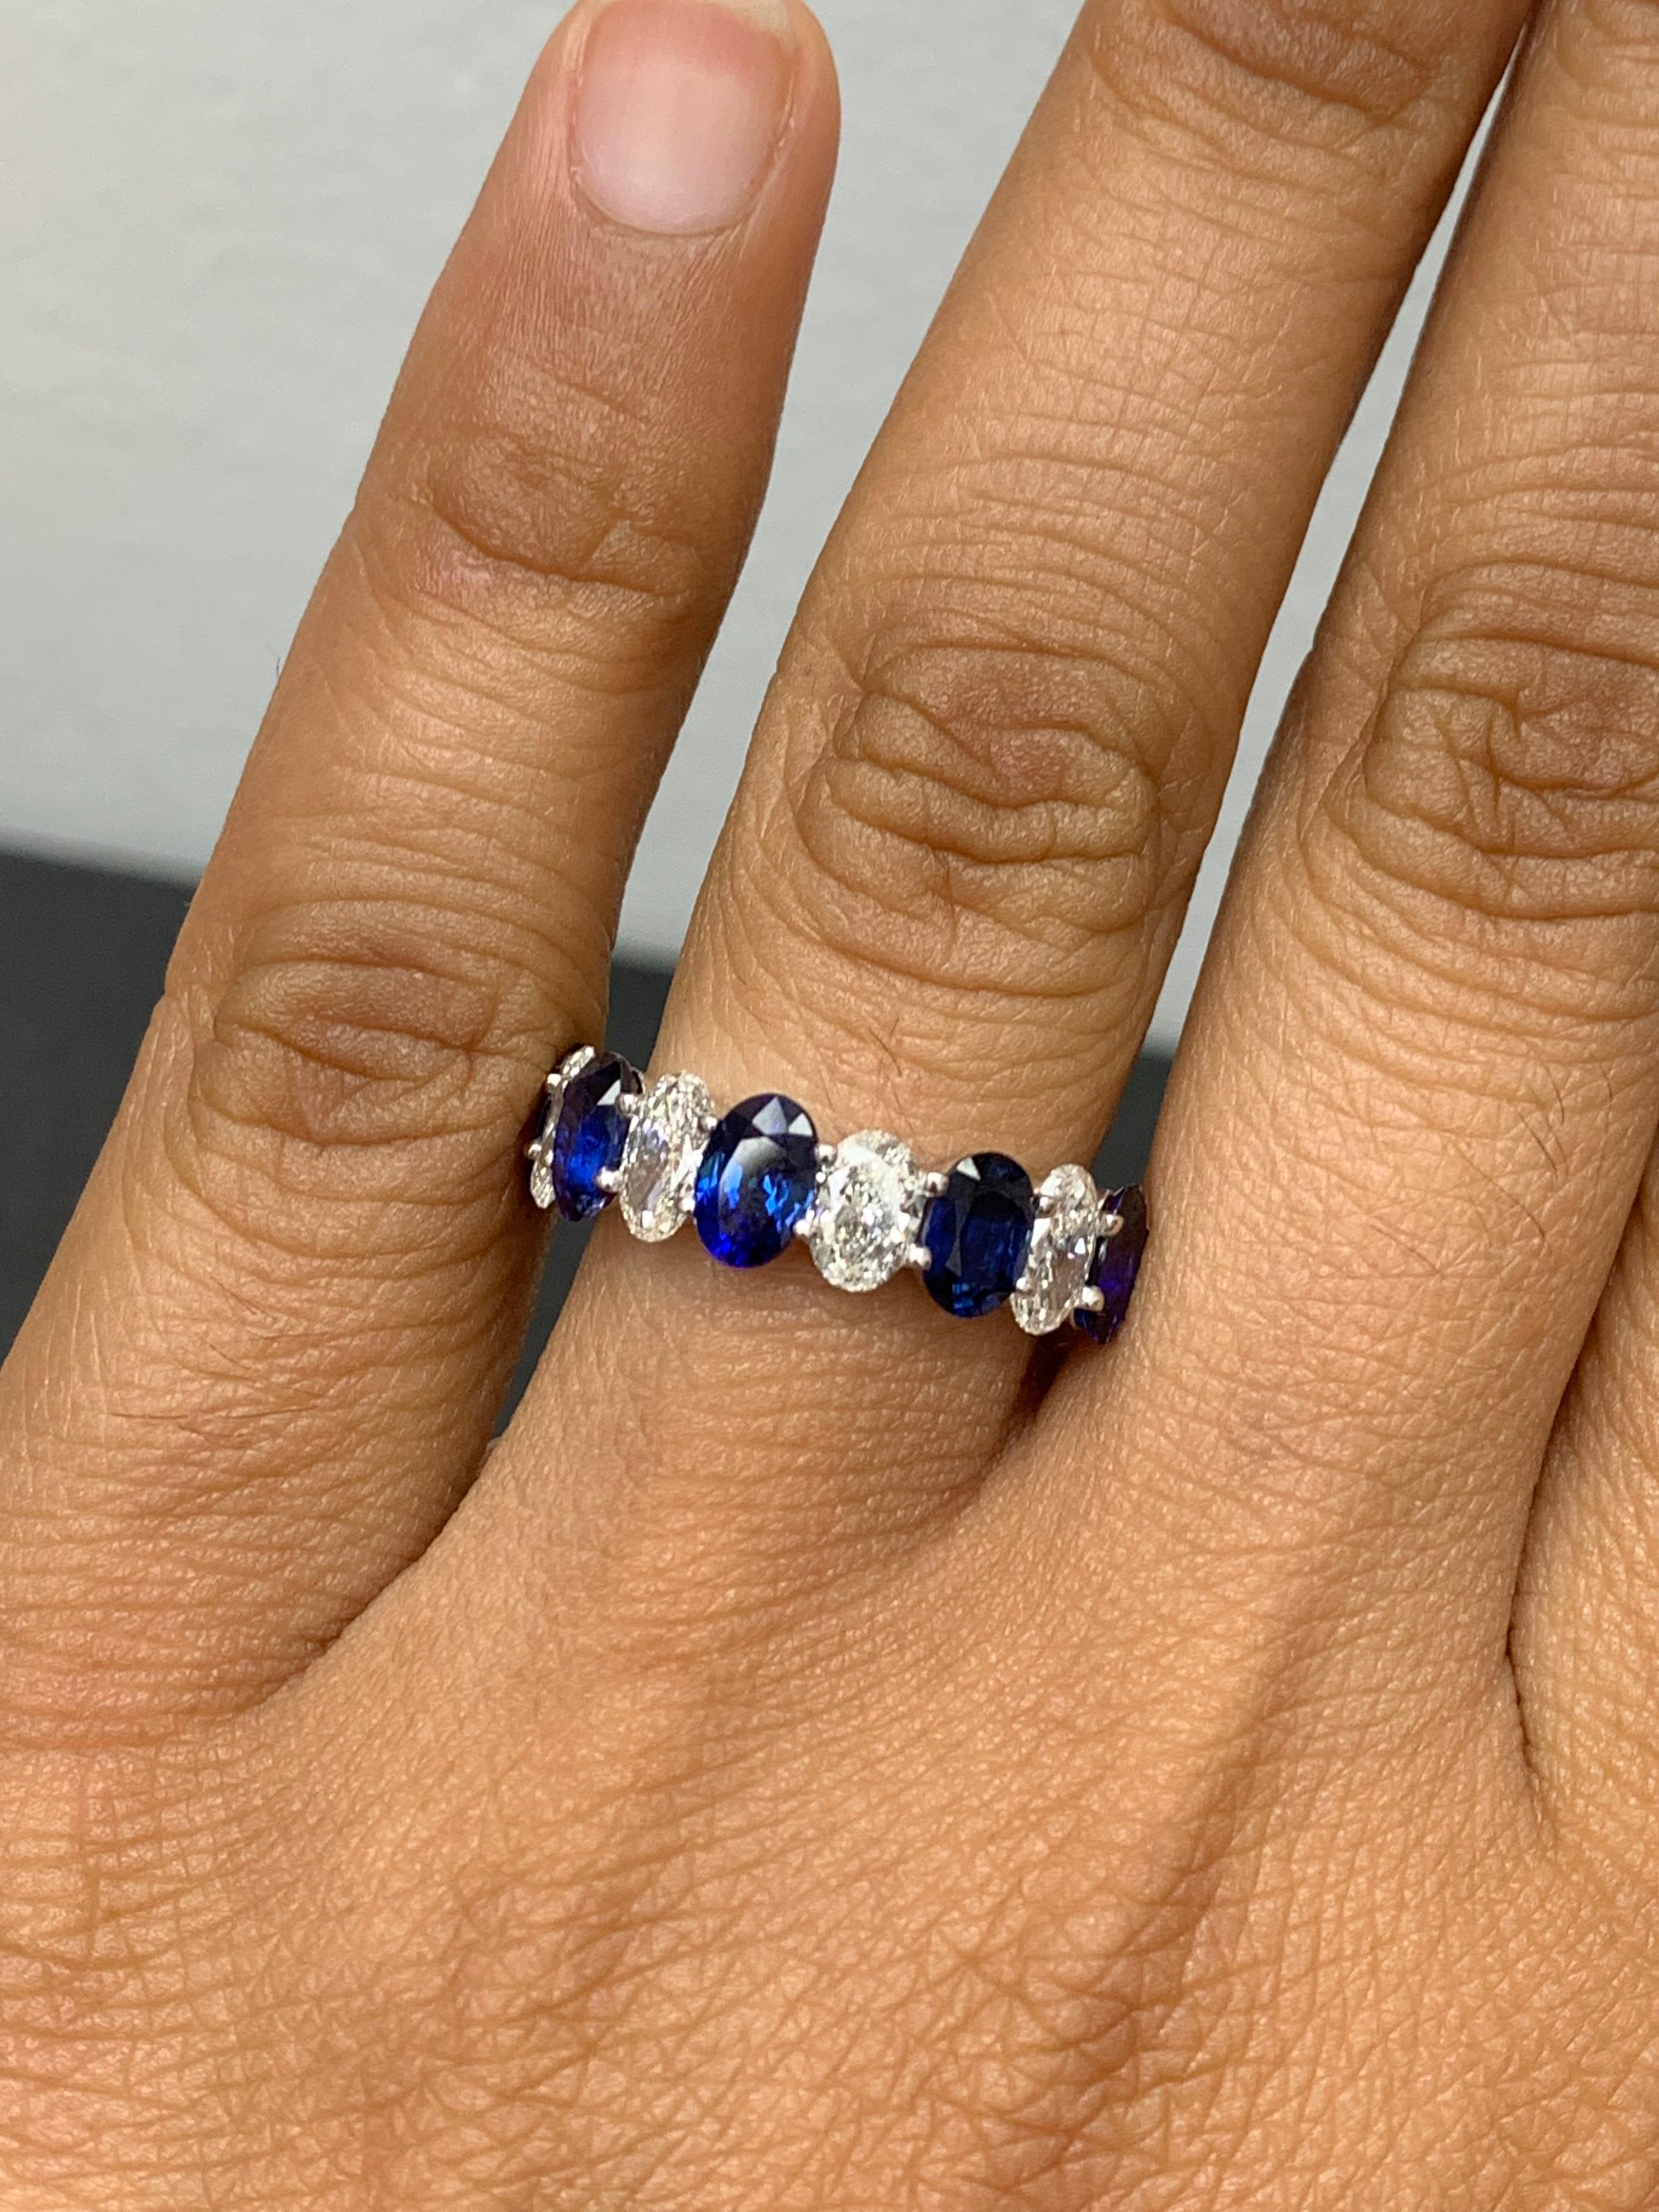 Eine faszinierende Edelstein Hochzeit Band 9 Stein-Stil präsentiert 5  Oval geschliffene königsblaue Saphire mit einem Gesamtgewicht von 3,10 Karat, abwechselnd mit diesen blauen Saphiren sind 4 oval geschliffene farblose Brillanten mit einem